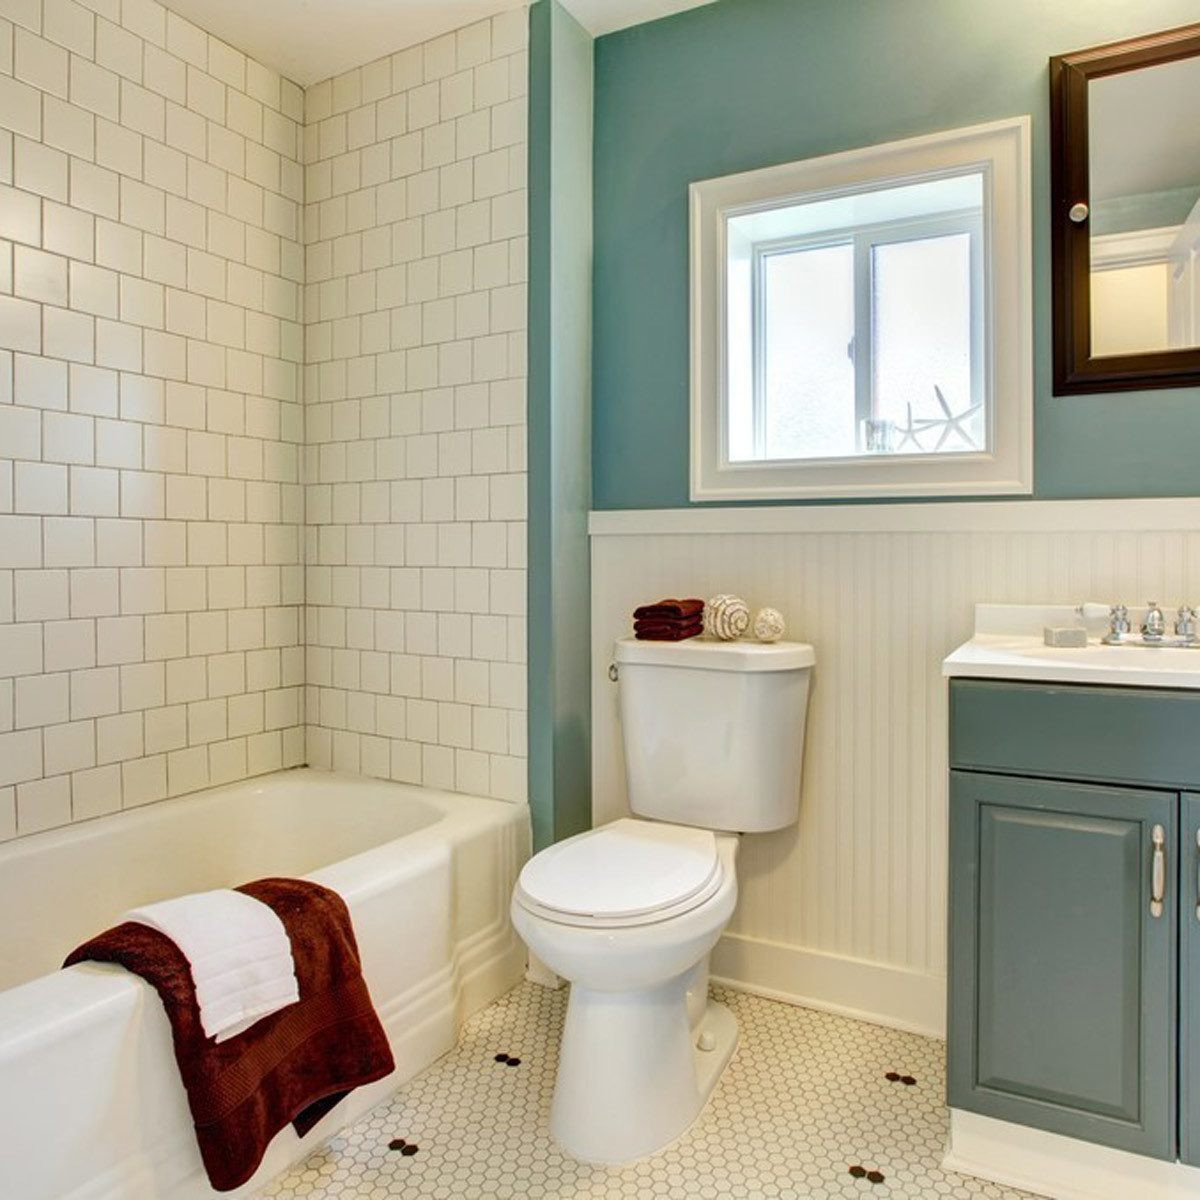 Images Of Bathroom Tile
 13 Tile Tips for Better Bathroom Tile — The Family Handyman